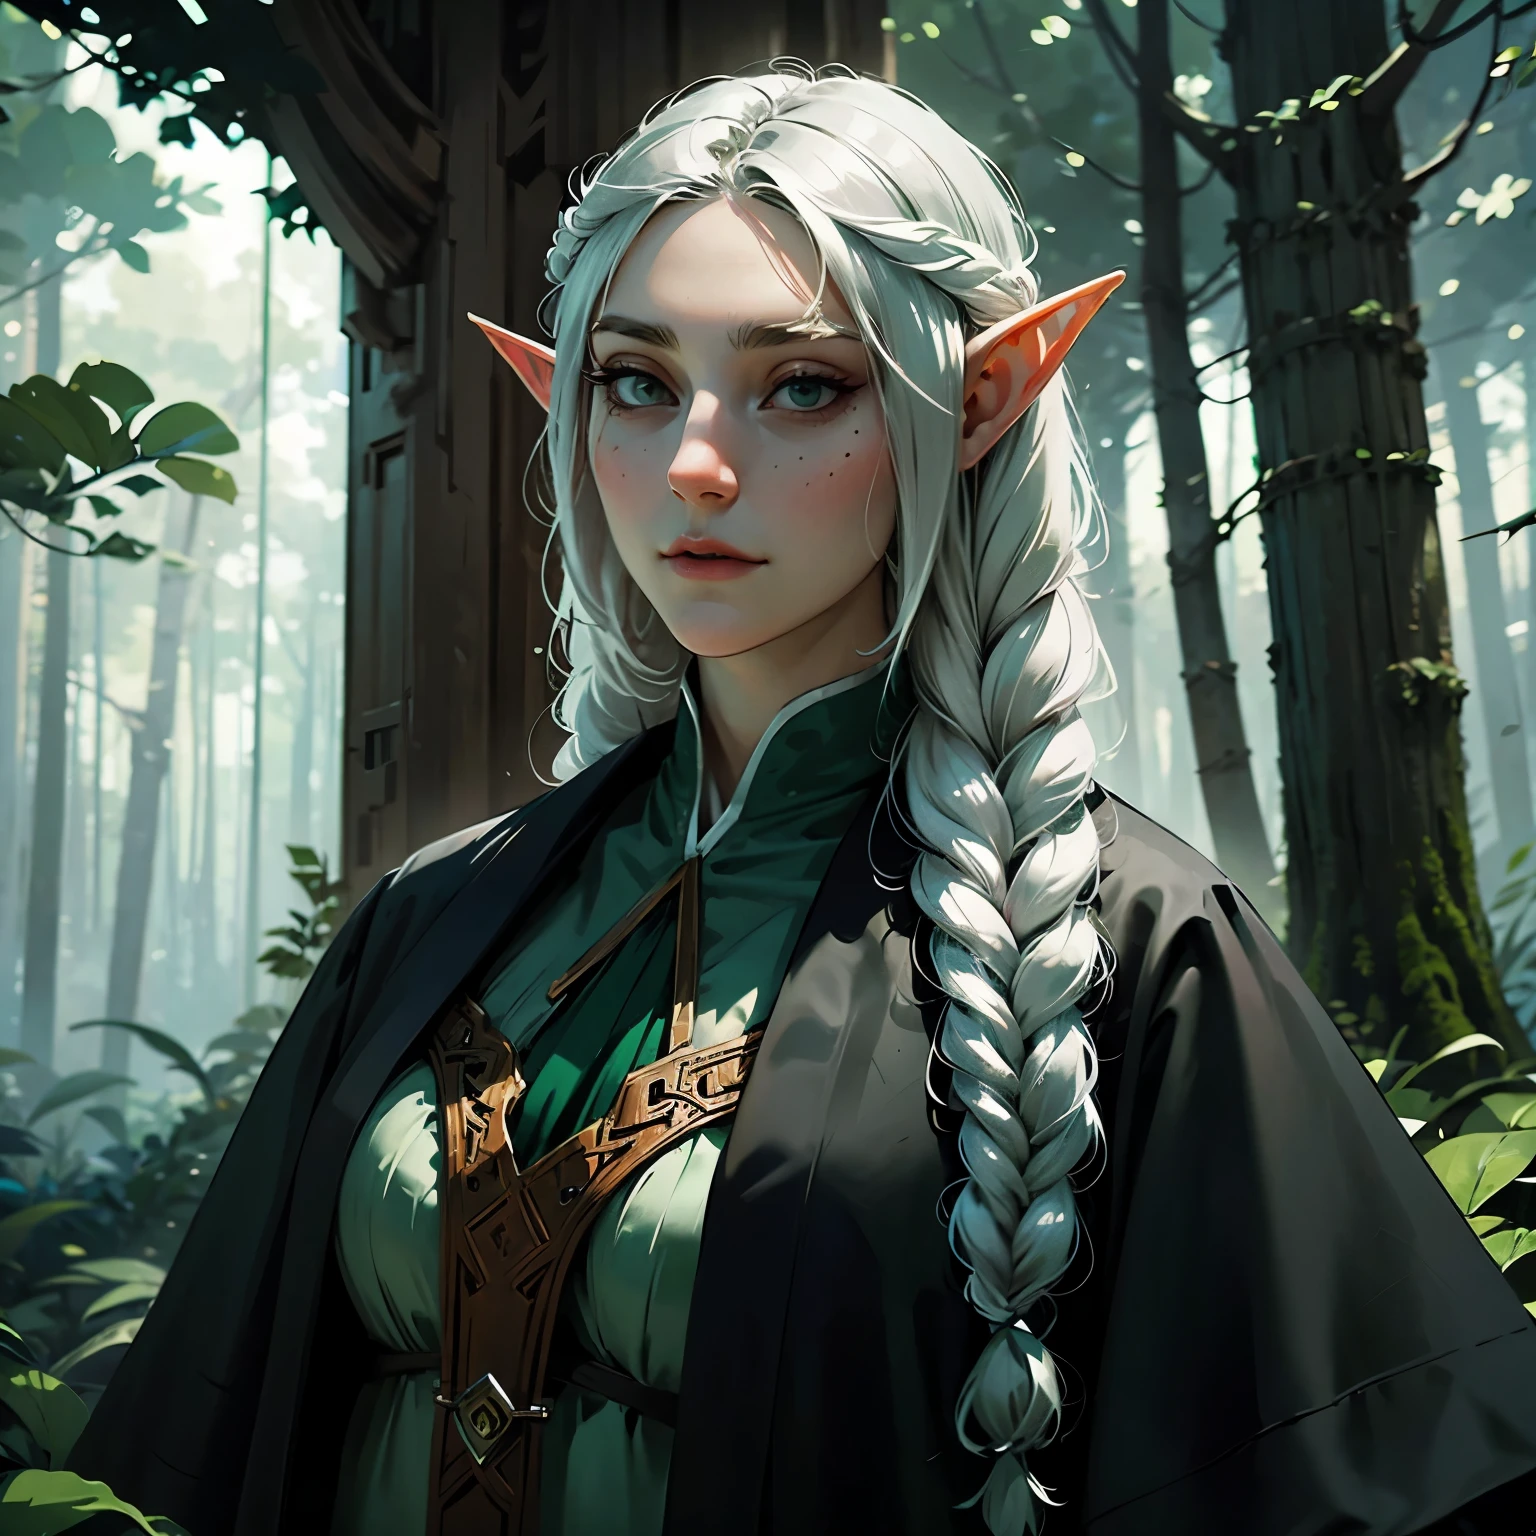 женщина-эльф, длинные черные волосы, Плетеные волосы, зелено-белая одежда, в лесу, фантастический персонаж, круглое лицо